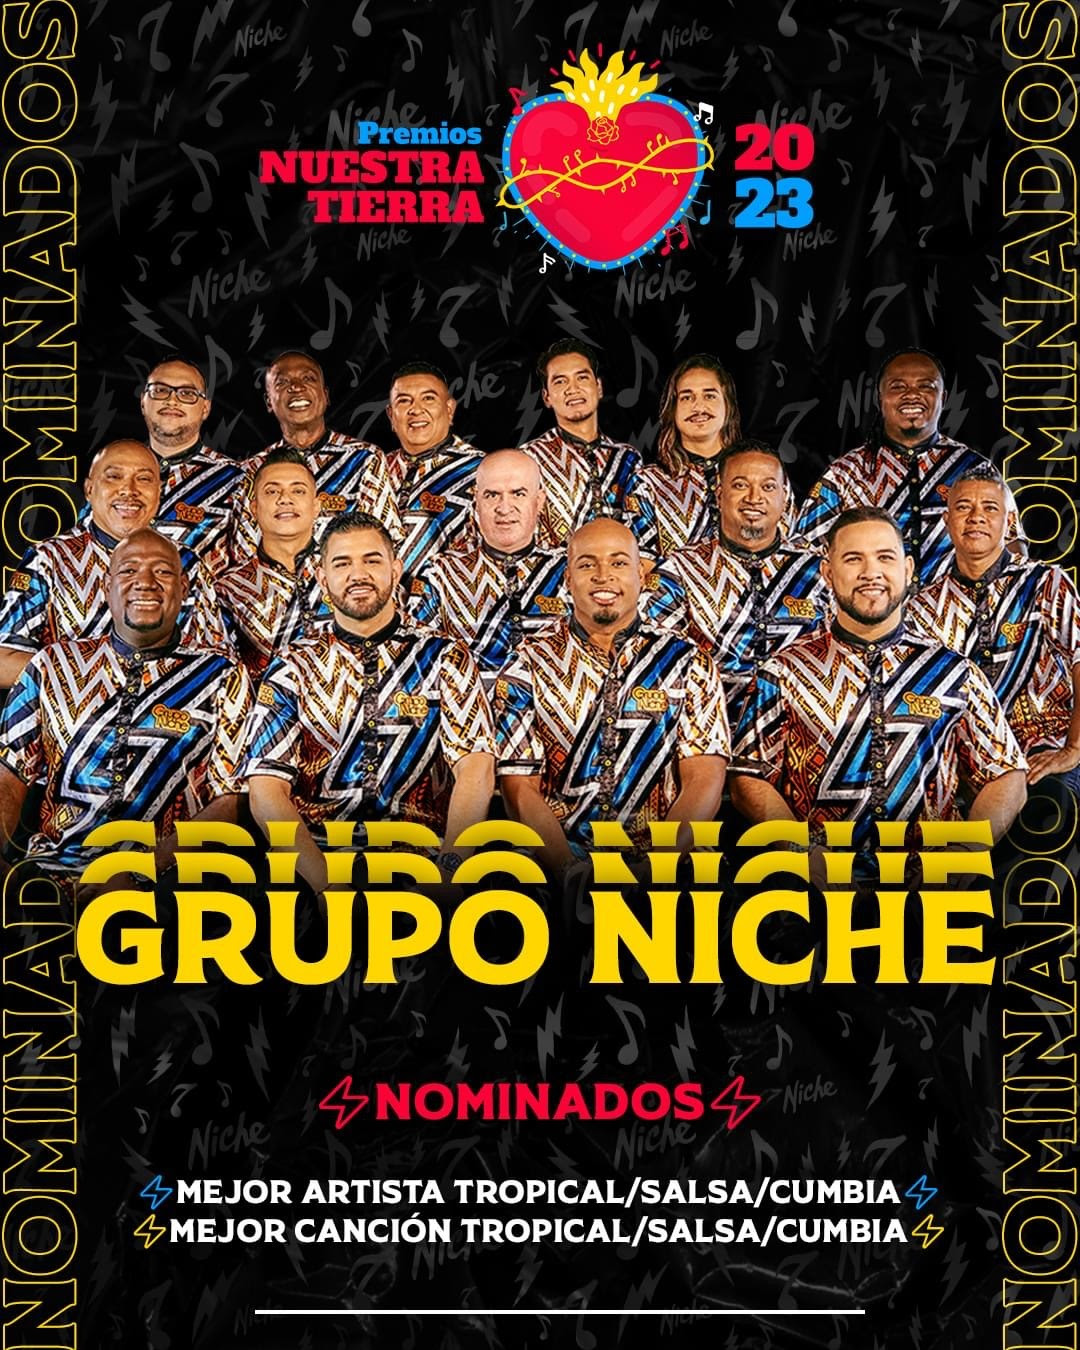 Grupo Niche es nominado a Premios Nuestra Tierra 2023